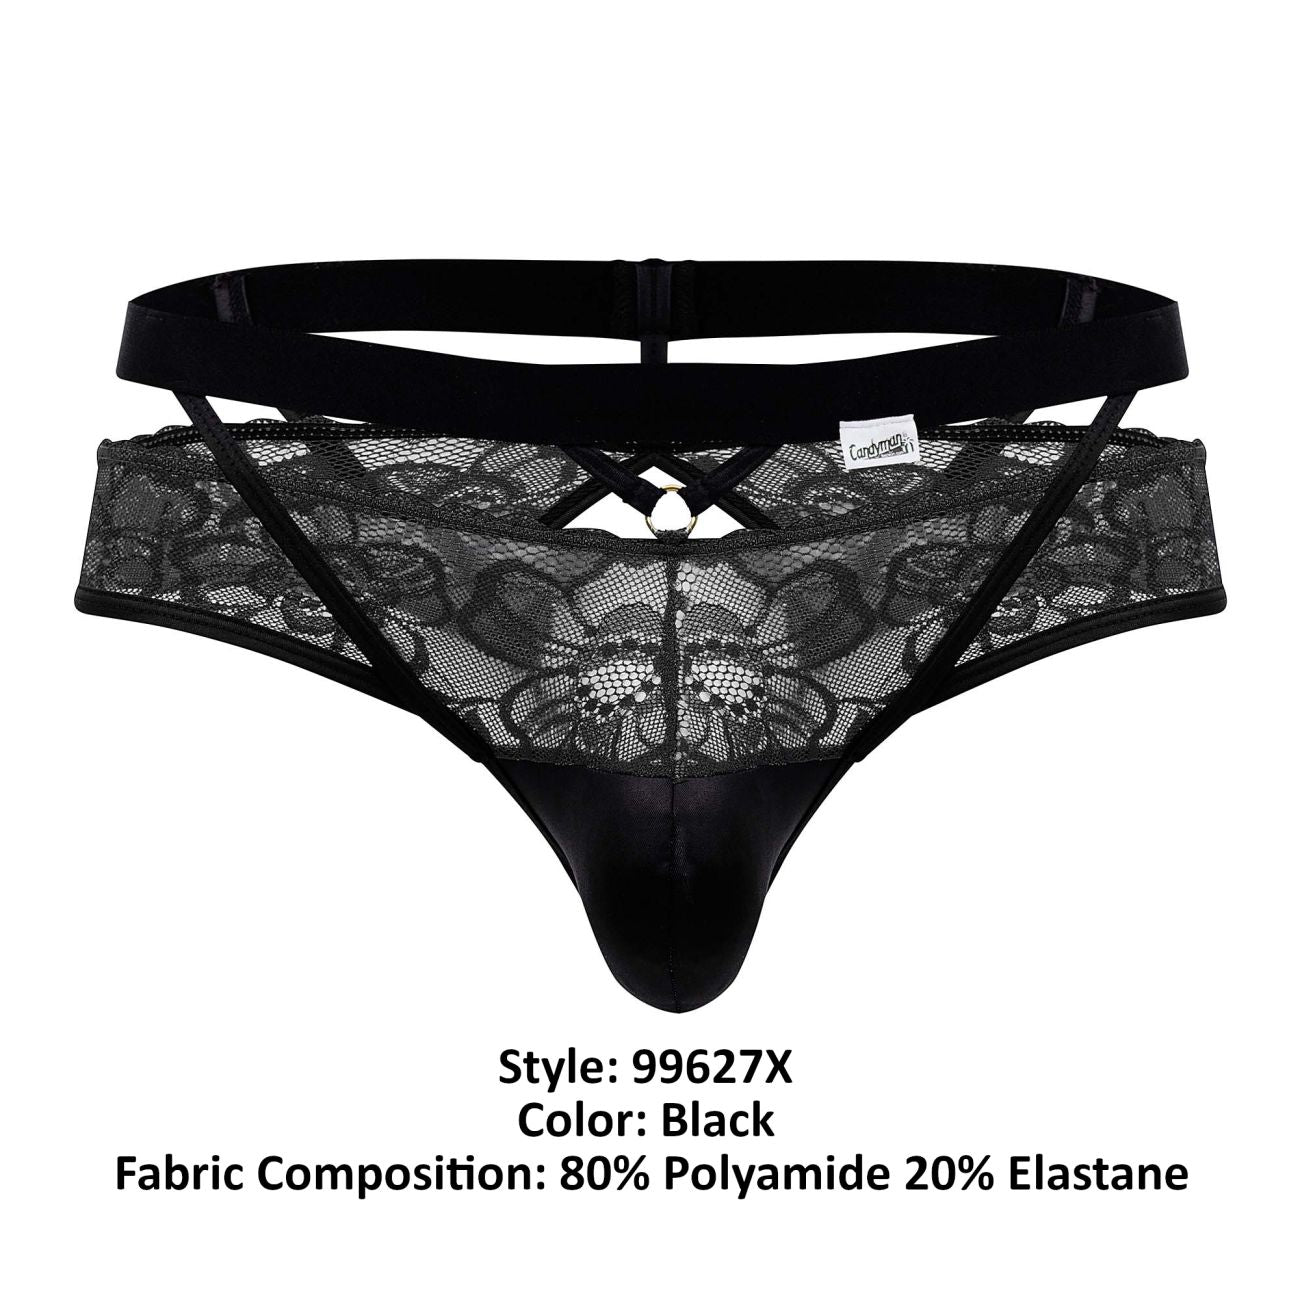 CandyMan 99627X Lace Jockstrap Black Plus Sizes